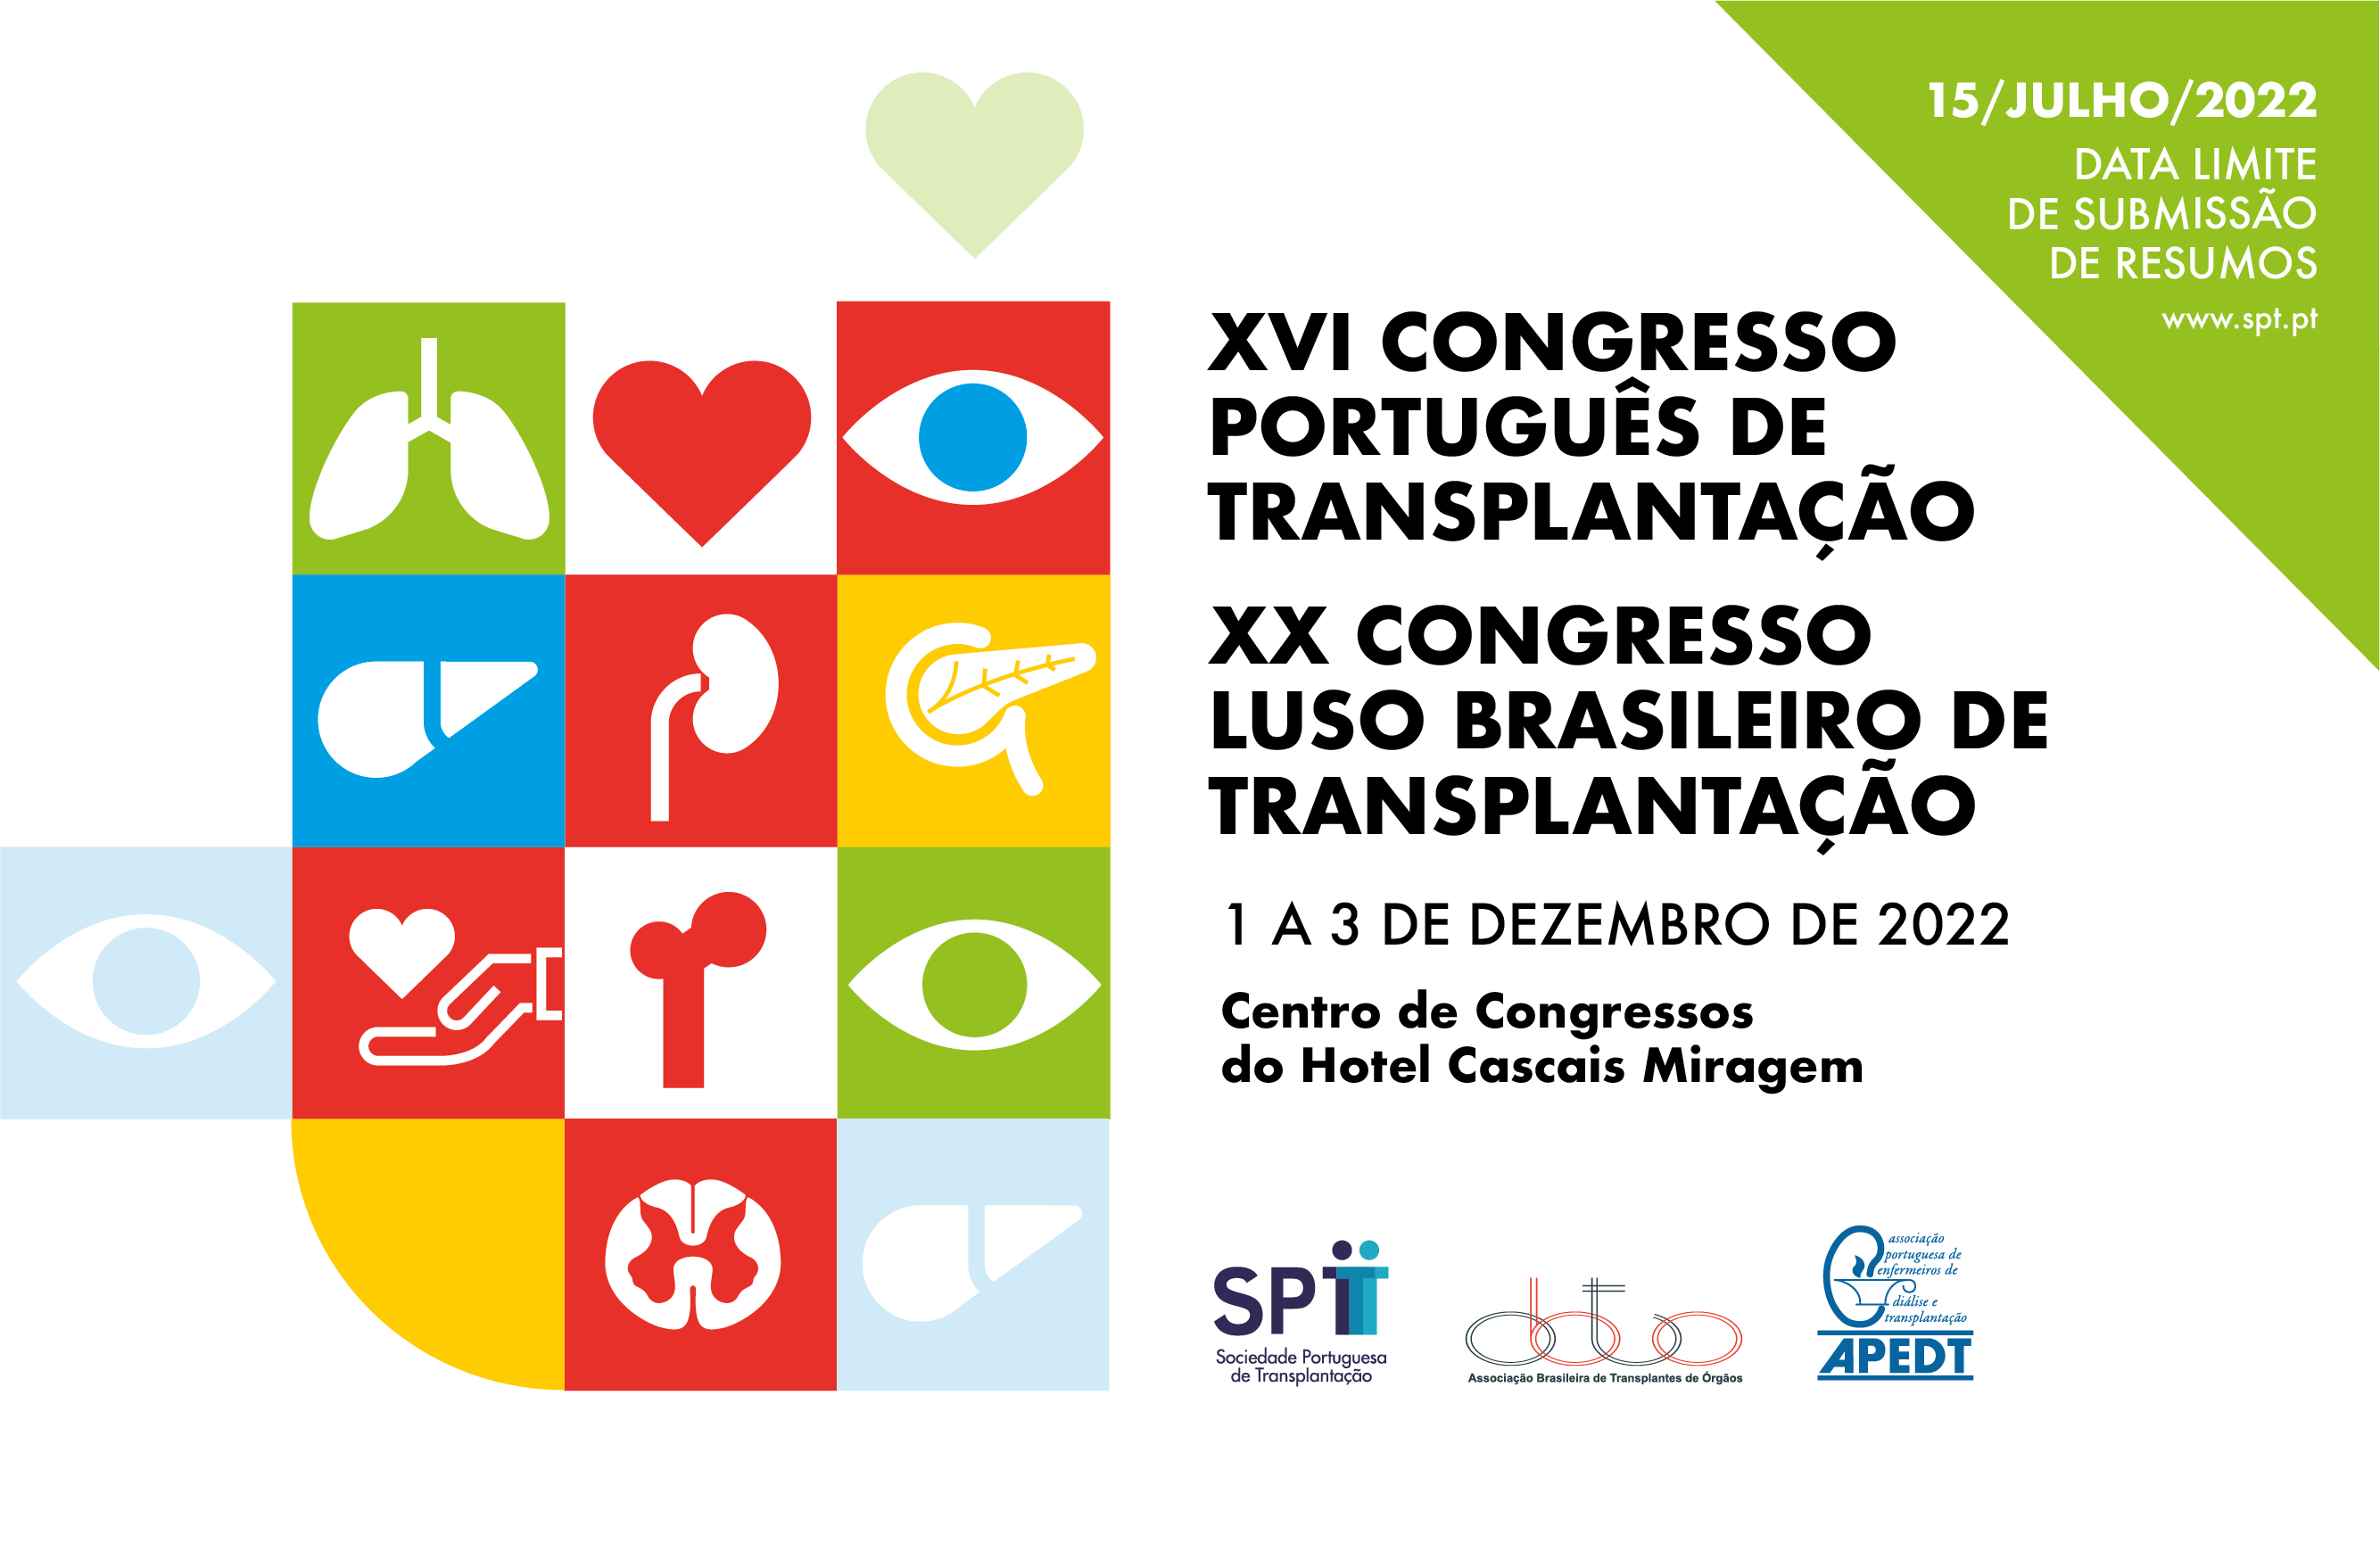 XVI Congresso Português de Transplantação 